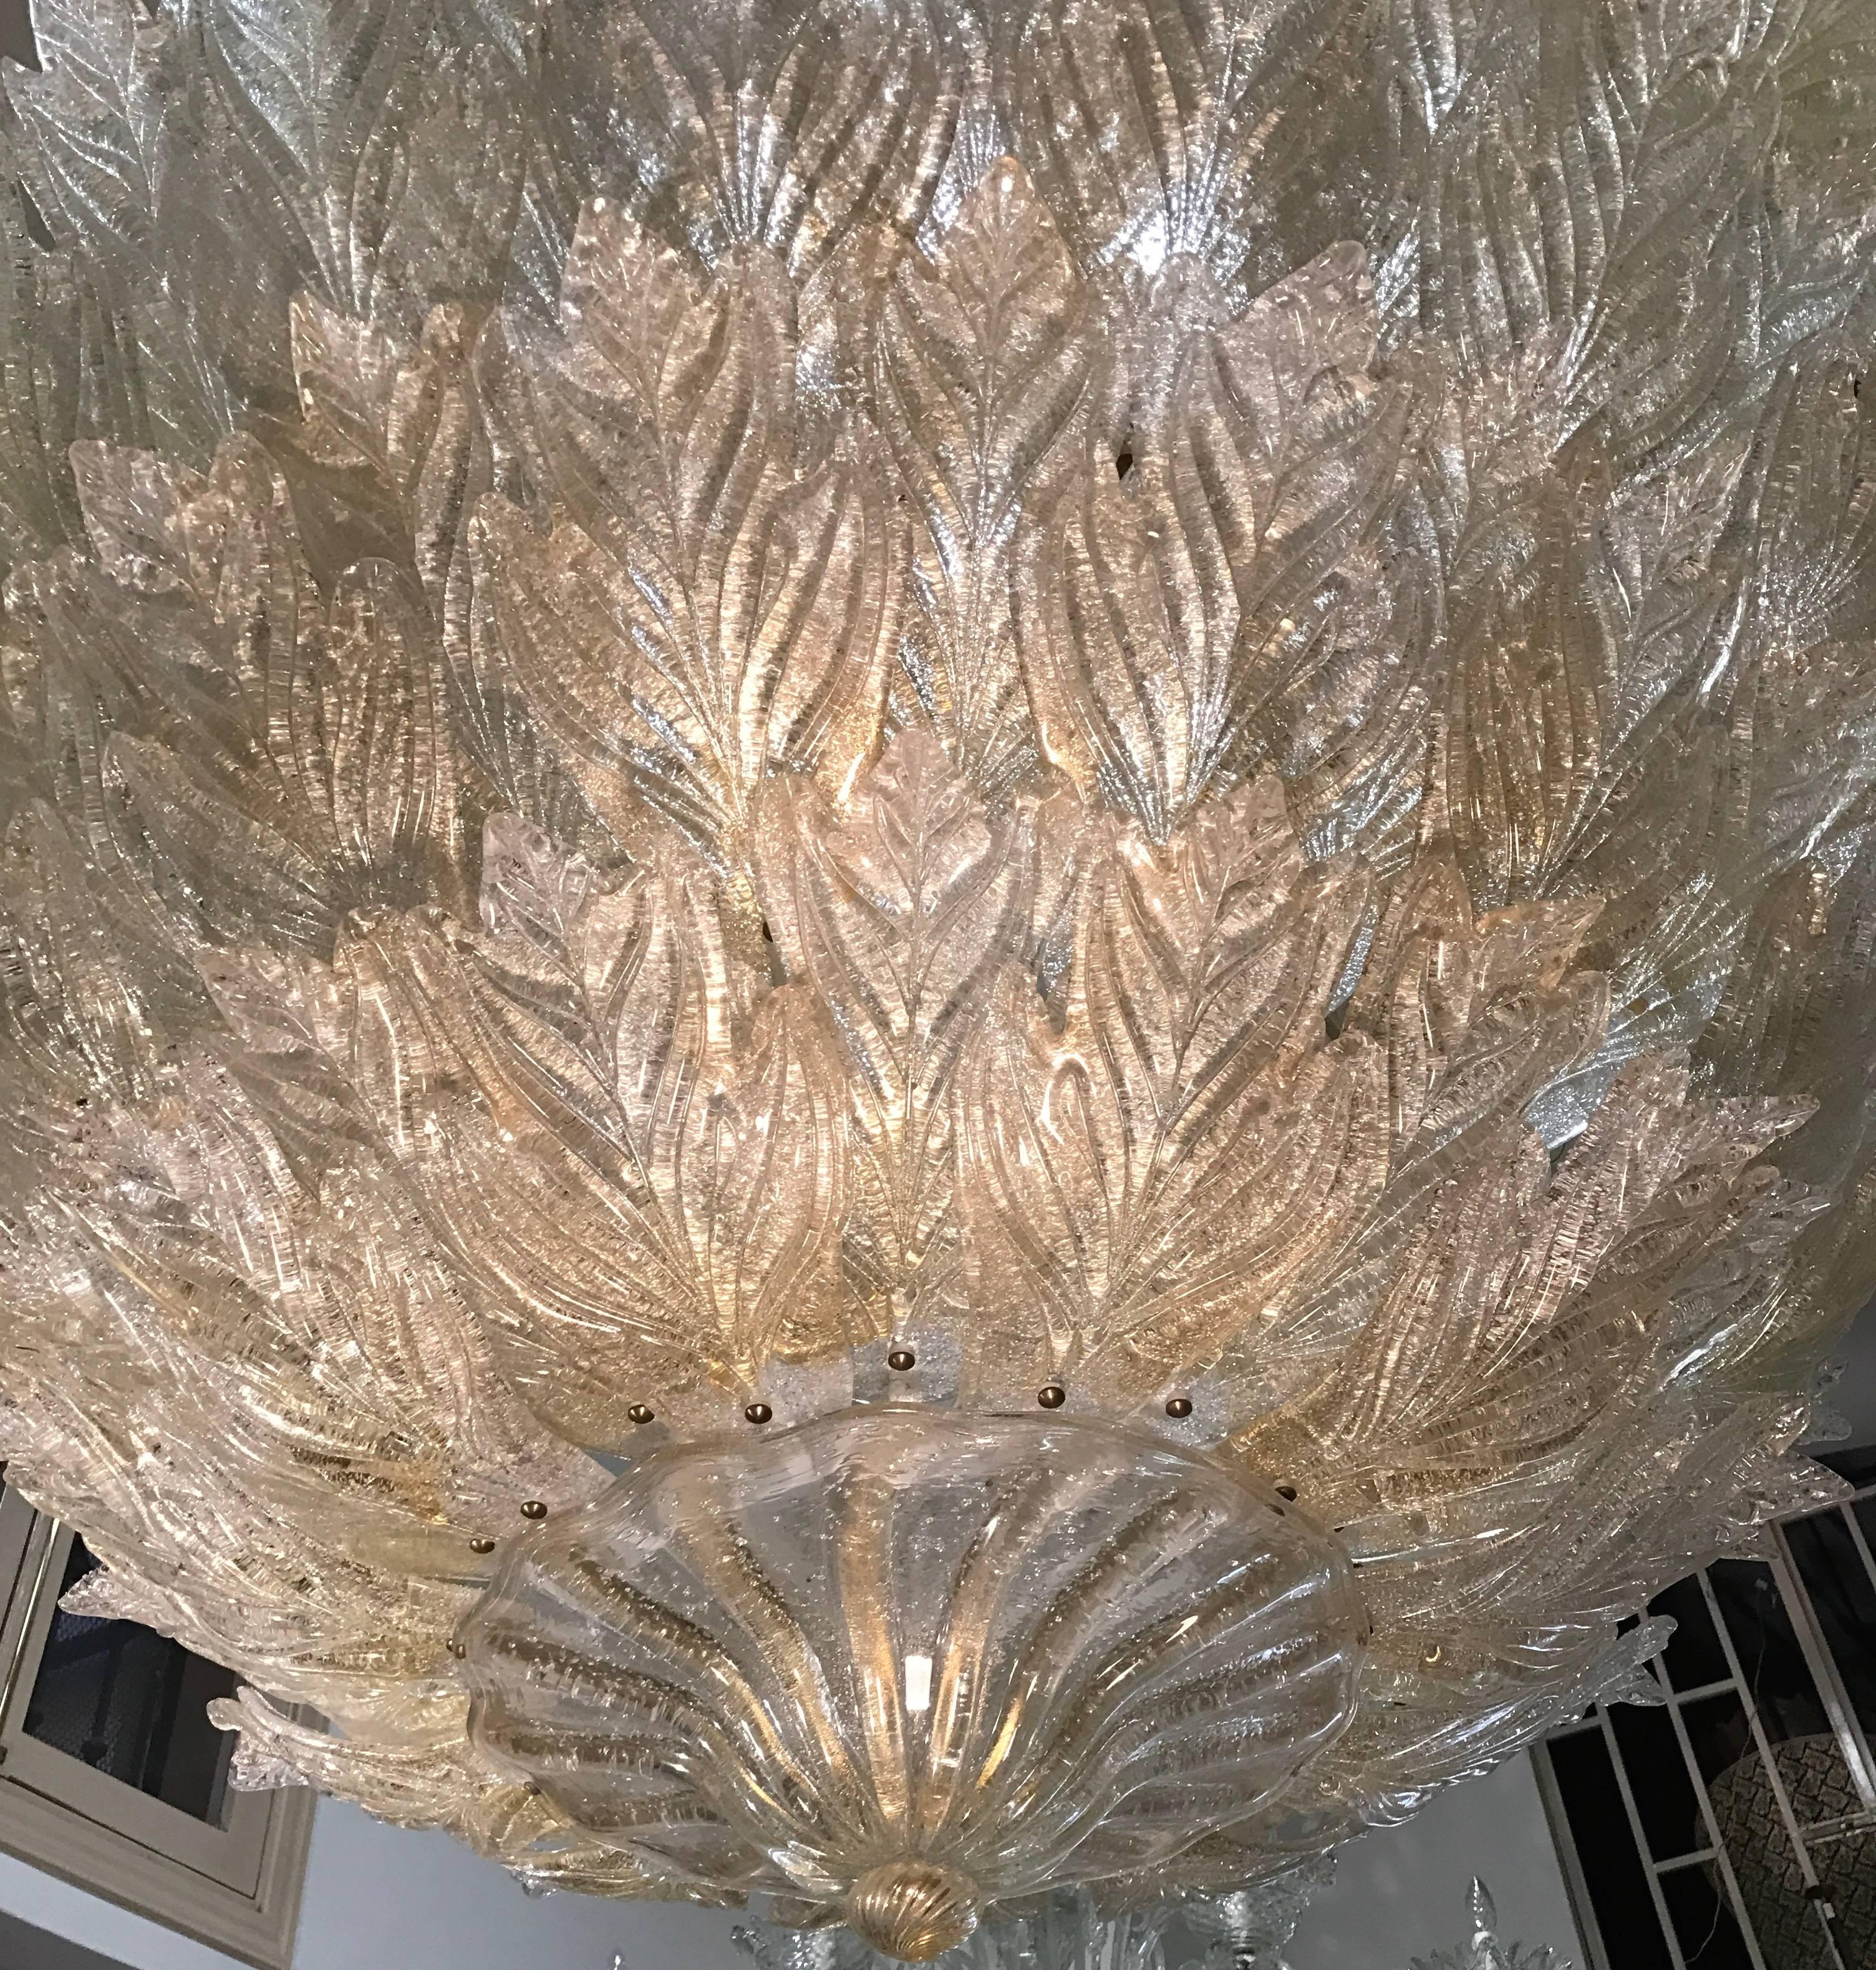 Ce grand luminaire extraordinaire comporte environ 150 feuilles disposées sur quatre niveaux, les verres sont agrémentés d'inclusions d'or.
   